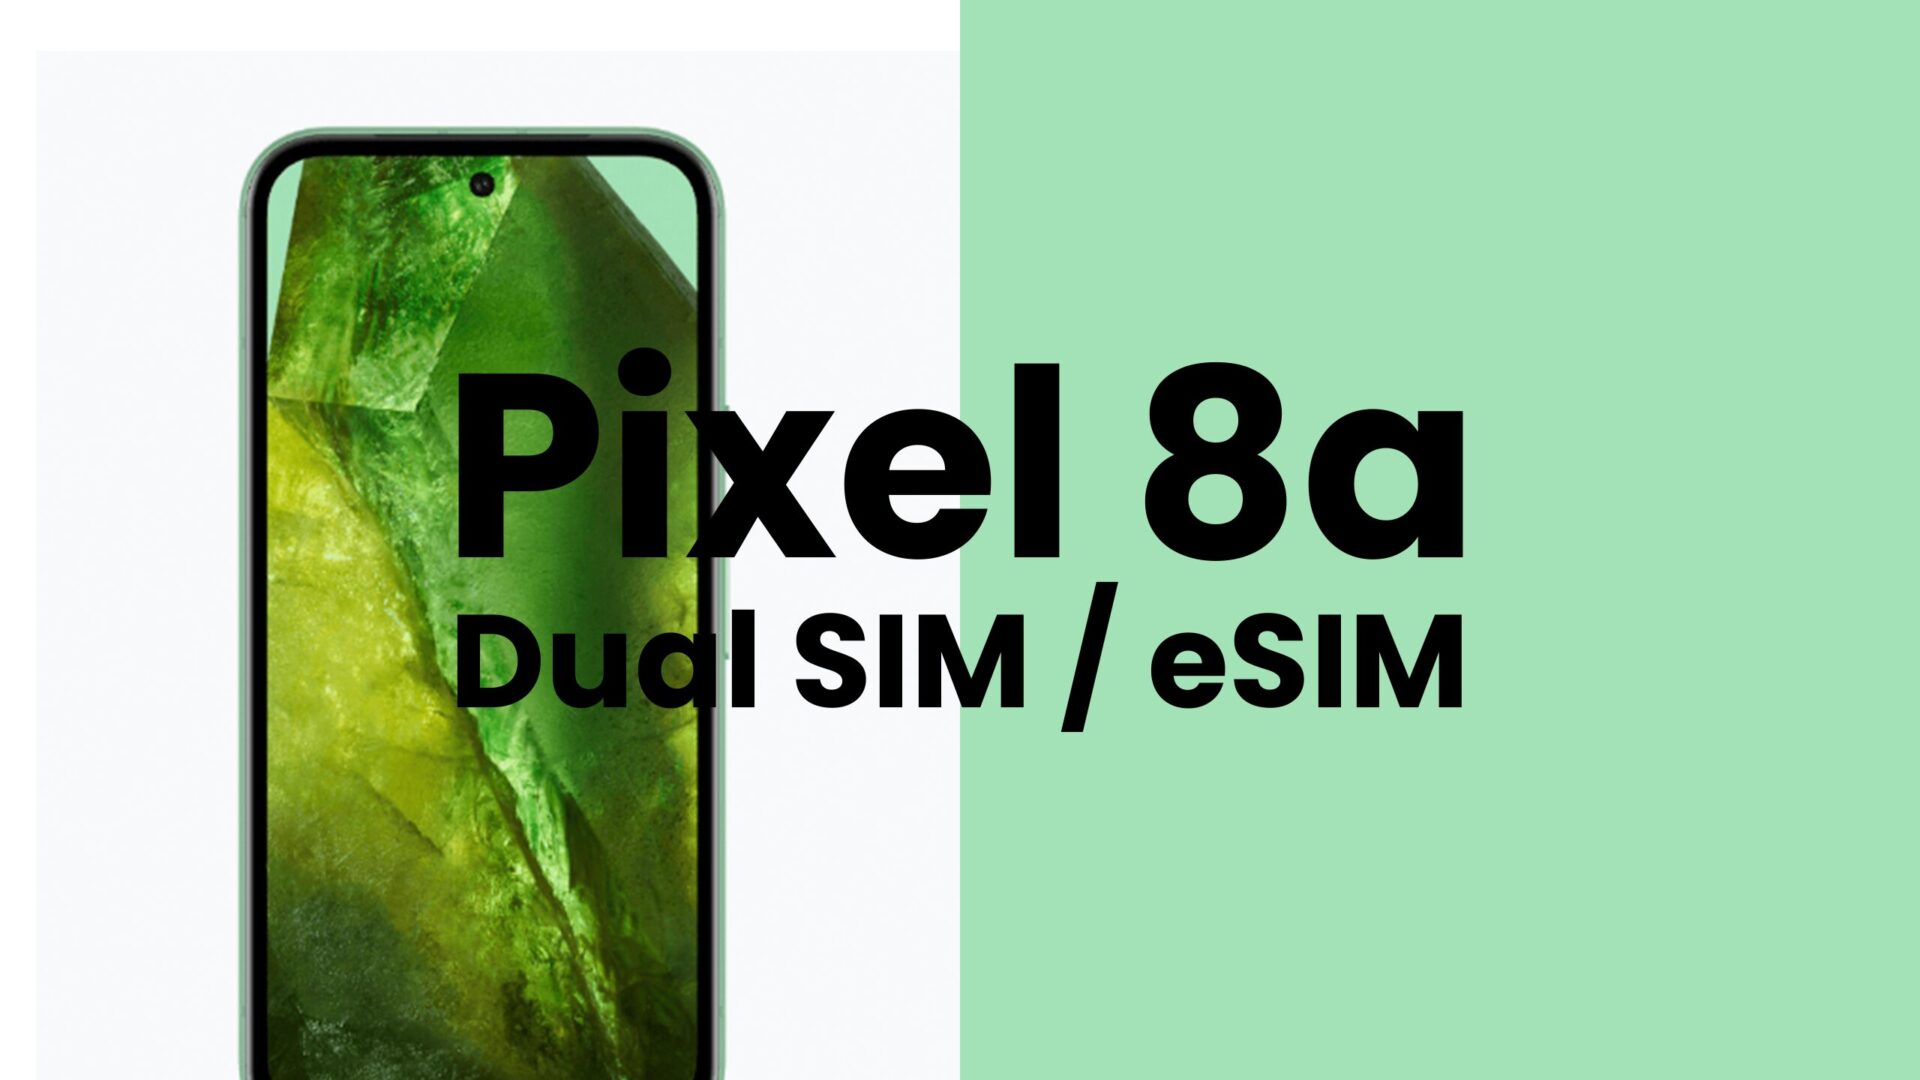 Google Pixel 8a【ピクセル8a】はデュアルSIM & eSIM機能対応。デュアルeSIMには非対応。のサムネイル画像